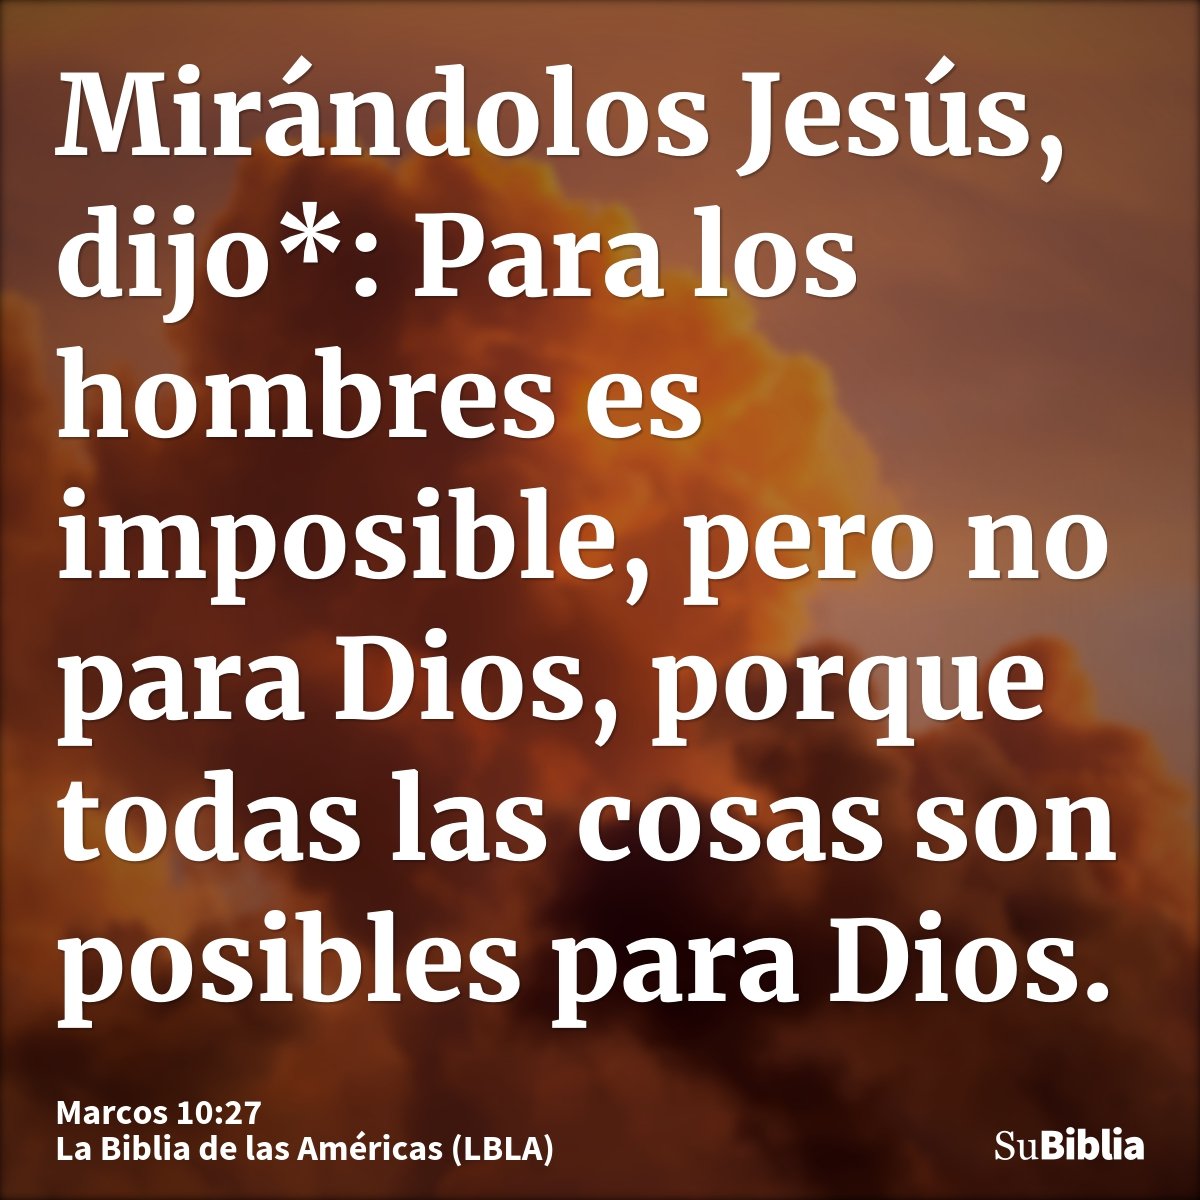 Mirándolos Jesús, dijo*: Para los hombres es imposible, pero no para Dios, porque todas las cosas son posibles para Dios.